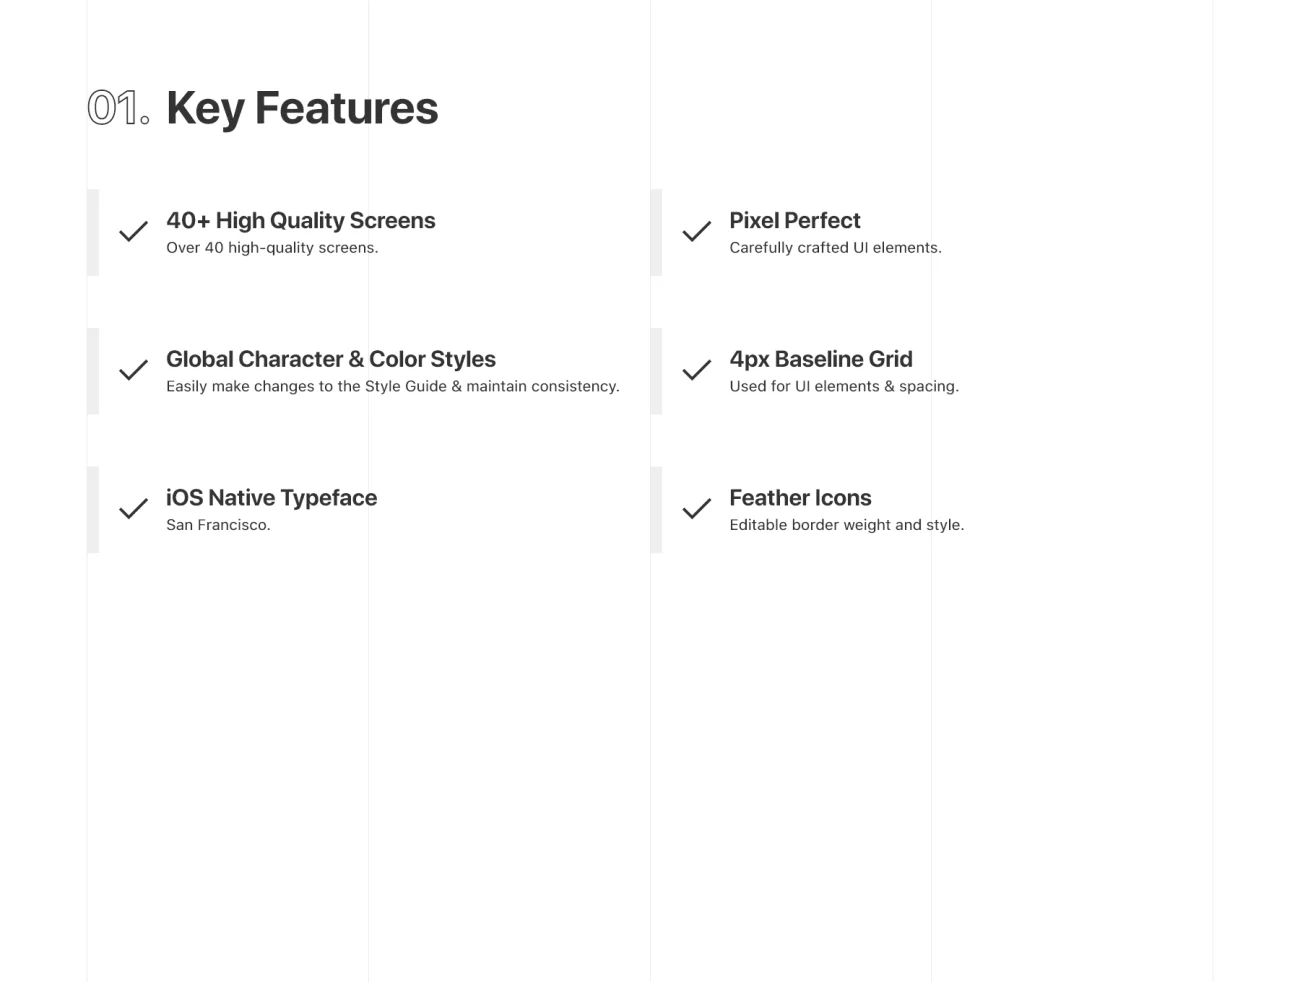 JoyFood — food delivery iOS UI Kit 食品配送在线外卖新零售即时配送和餐饮供应链业务iOS用户界面套件-UI/UX-到位啦UI